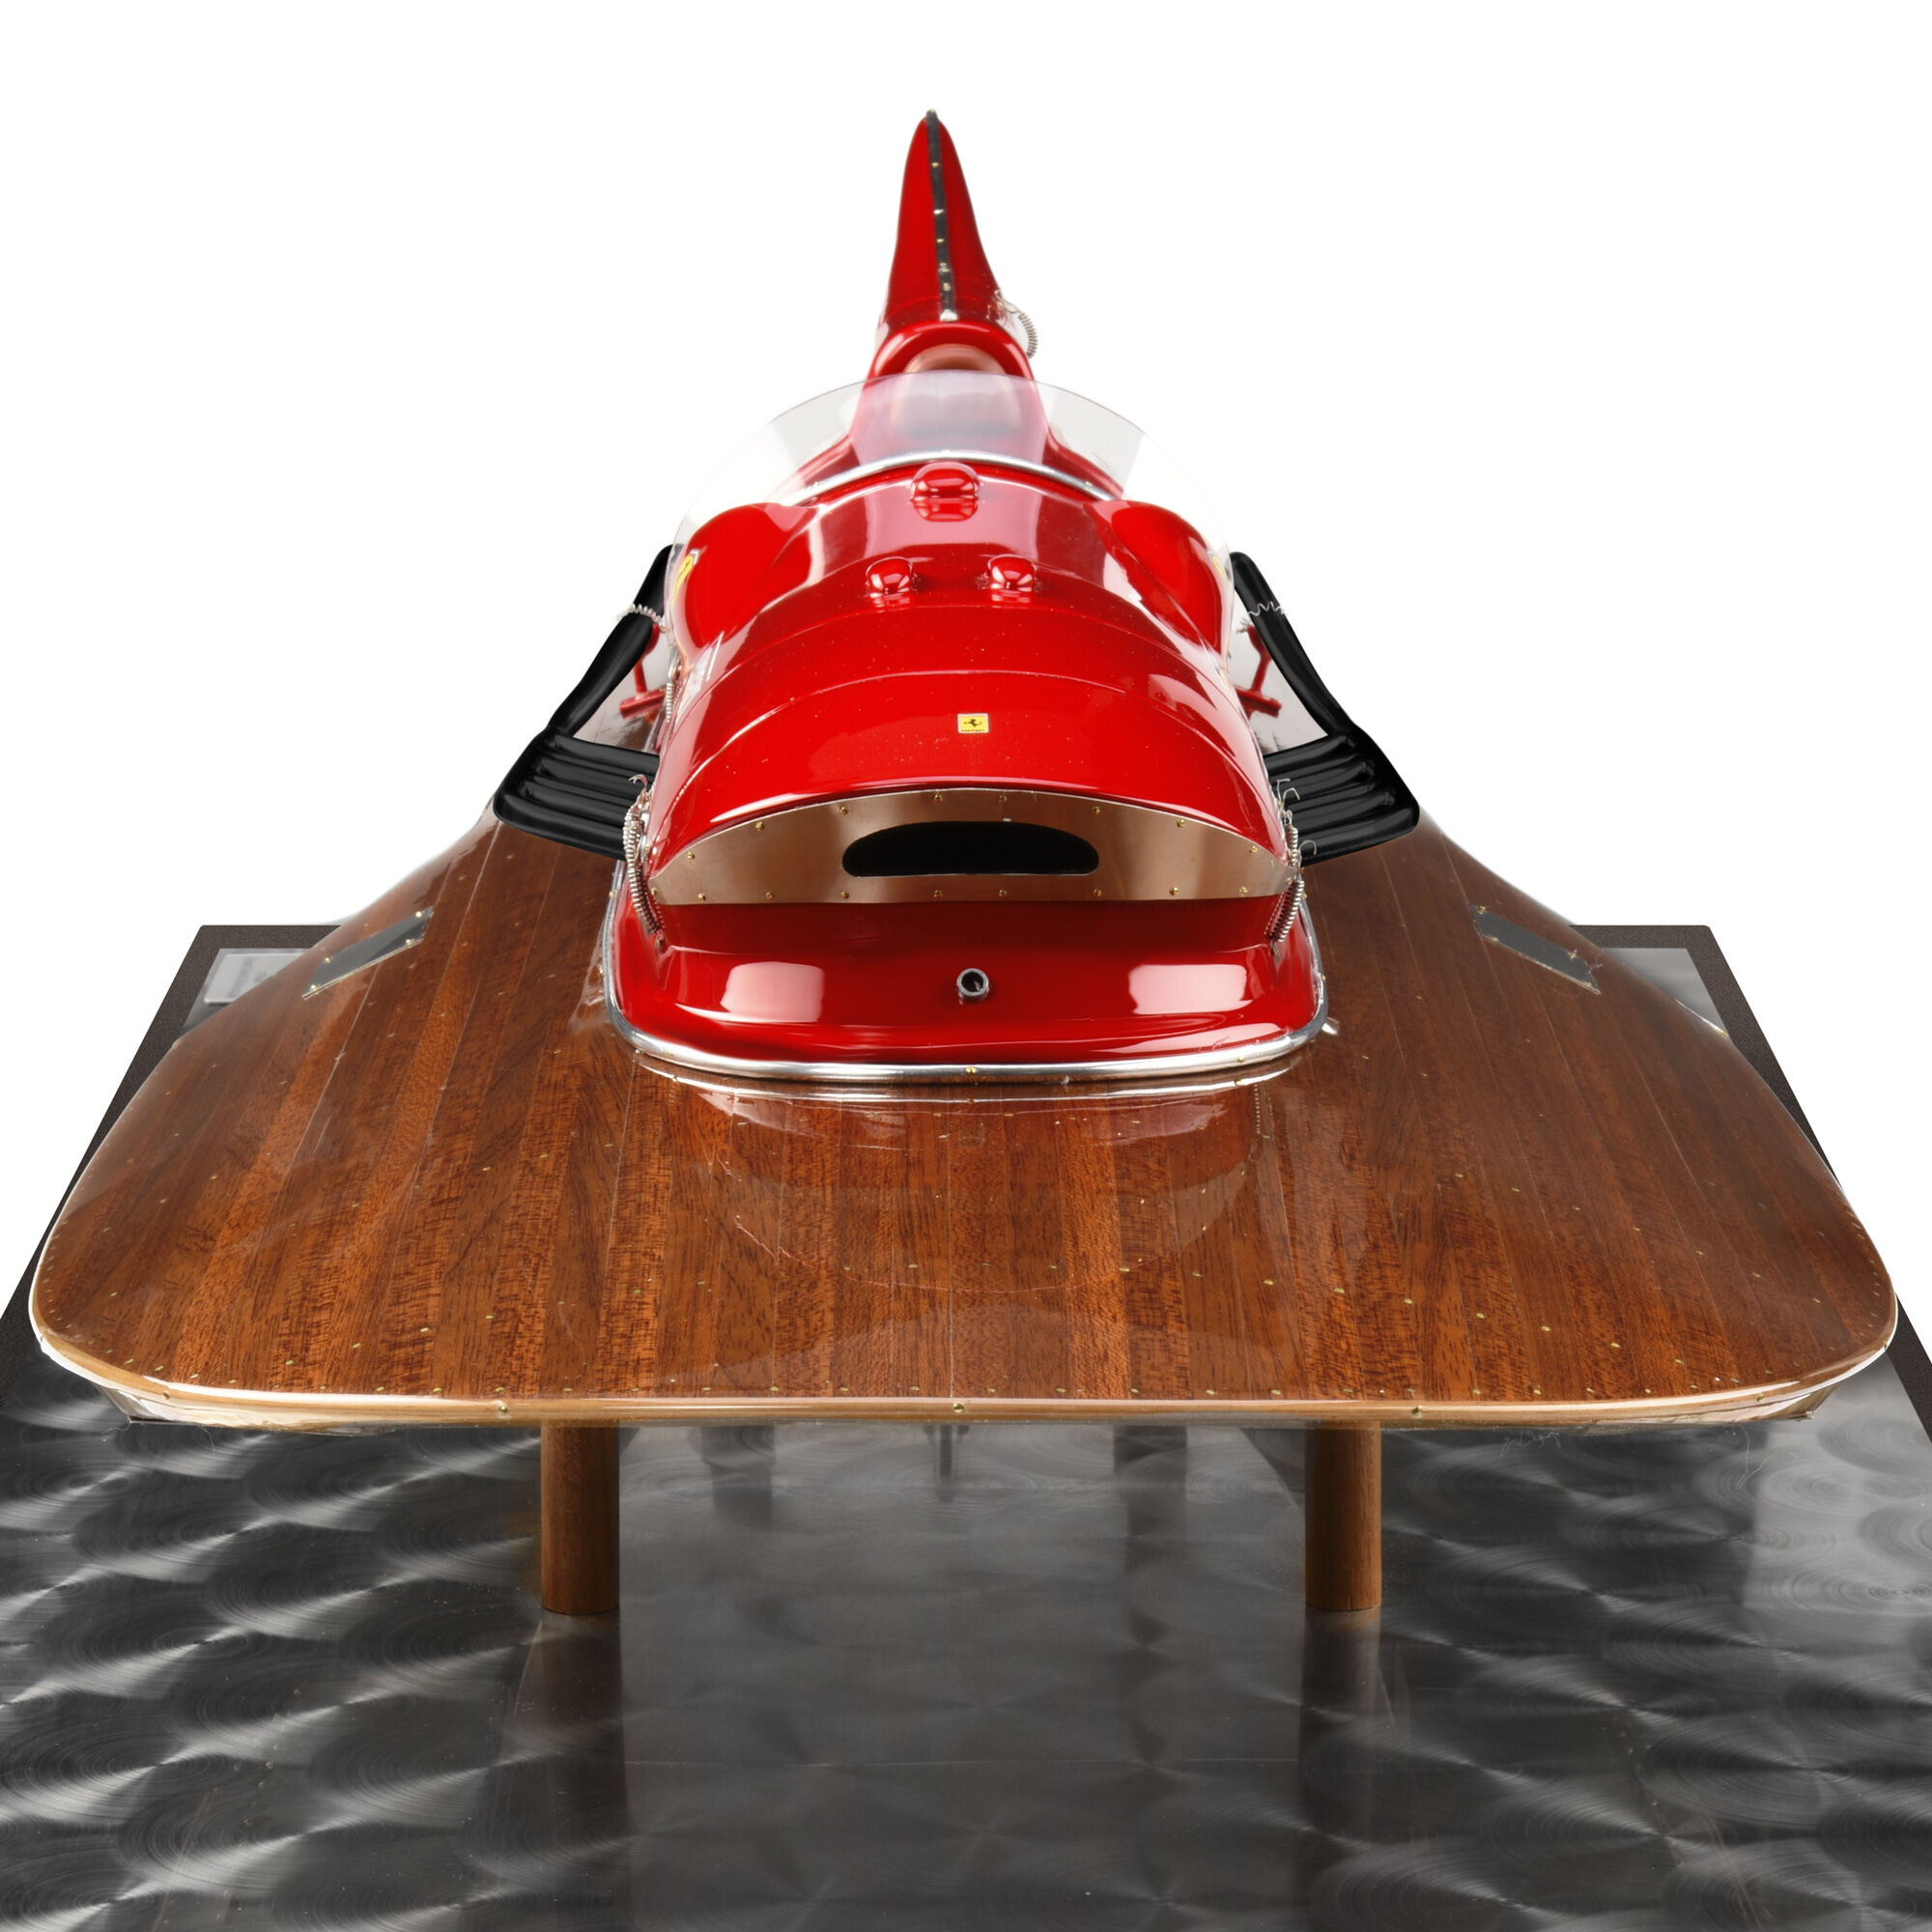 Ferrari 特别版 Arno XI 赛艇 1:8 模型 多色 40610f